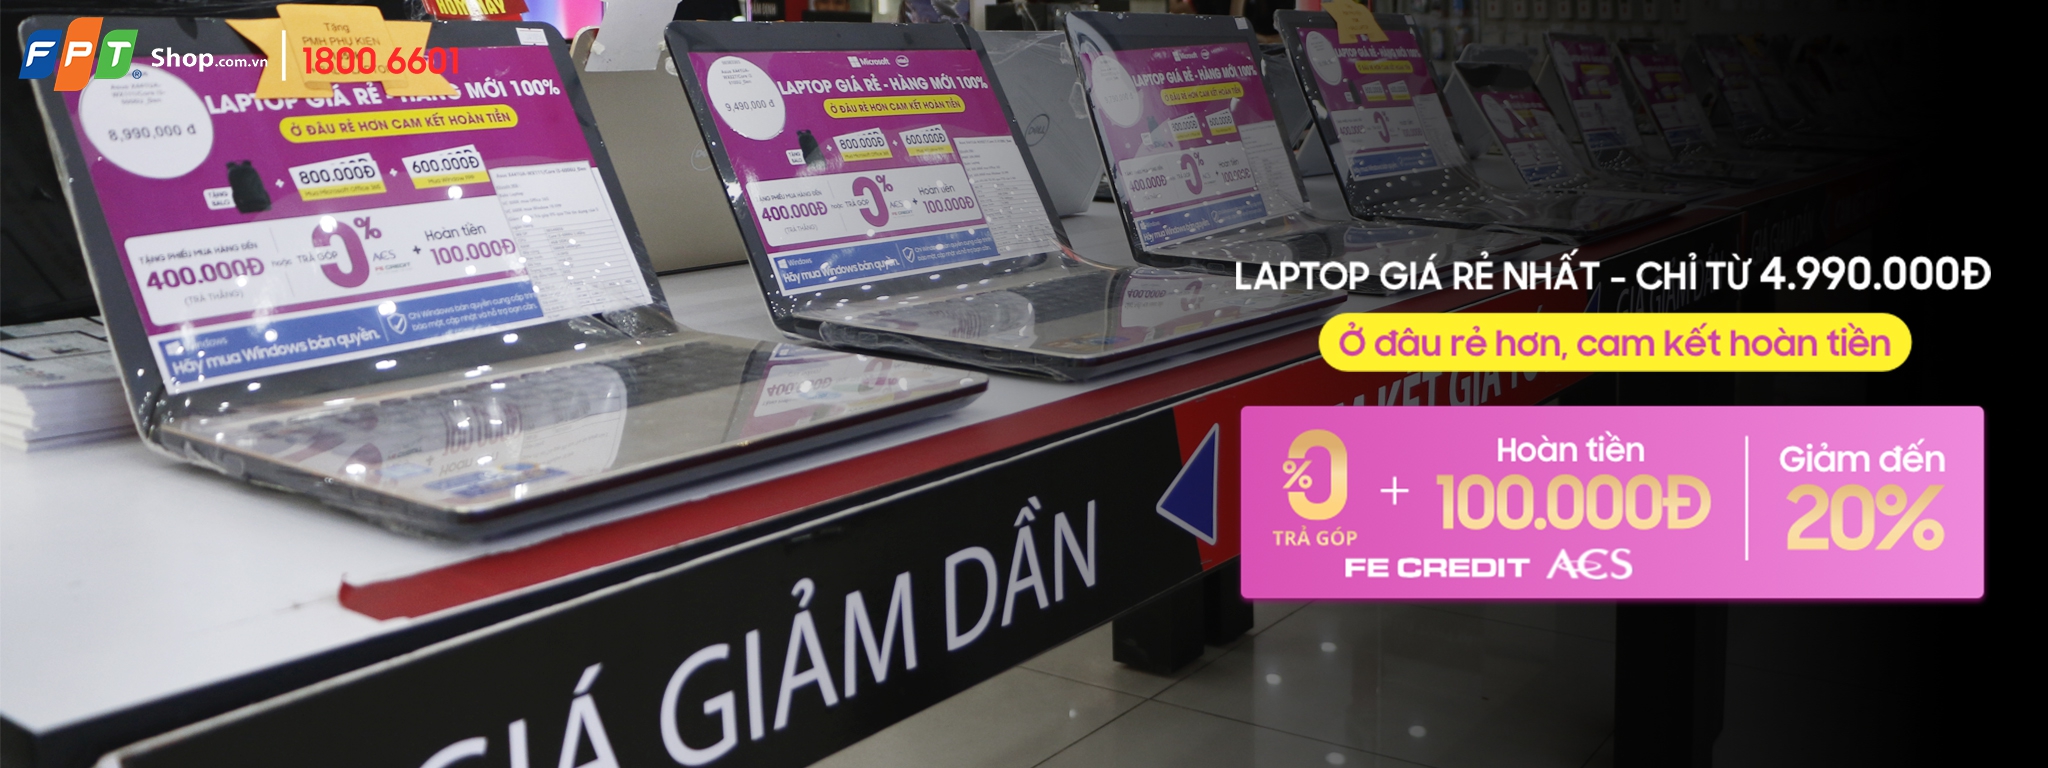 [QC] FPT Shop cam kết “Laptop giá rẻ - Ở đâu rẻ hơn, hoàn lại tiền”